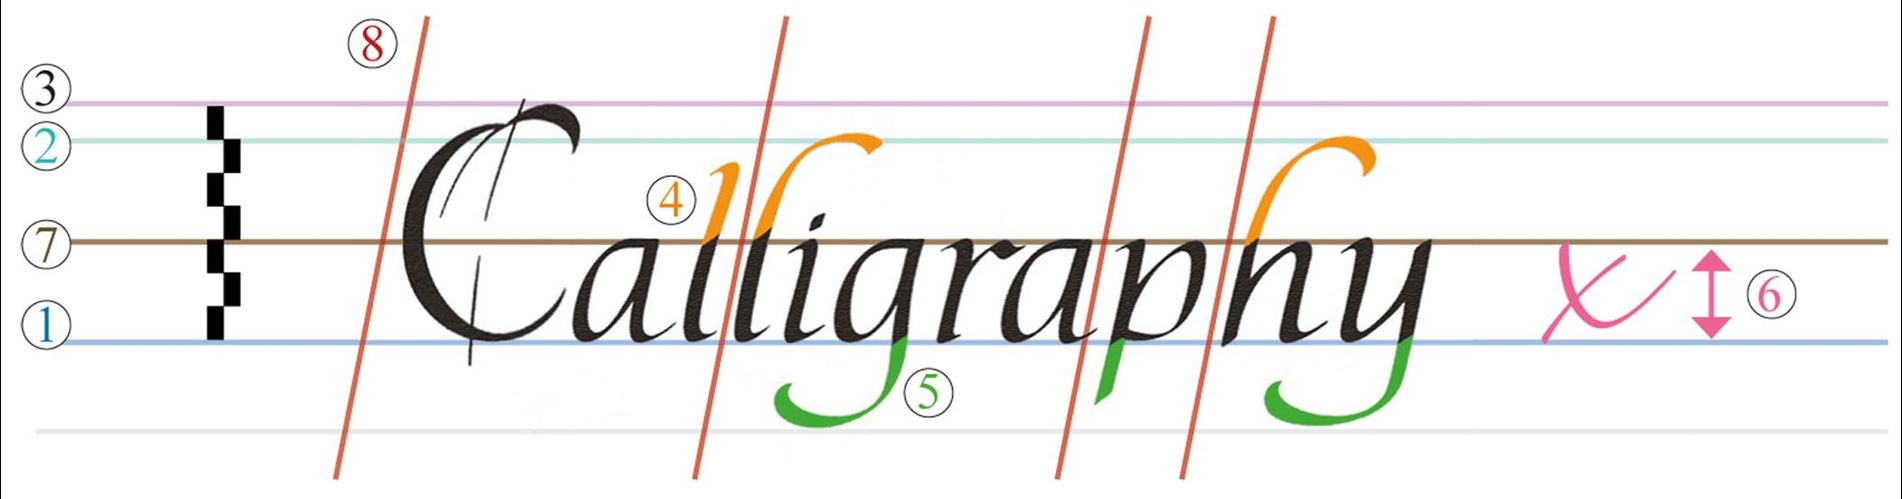 Techniken beim Kalligraphieren - Linienführungen, Schreibstil